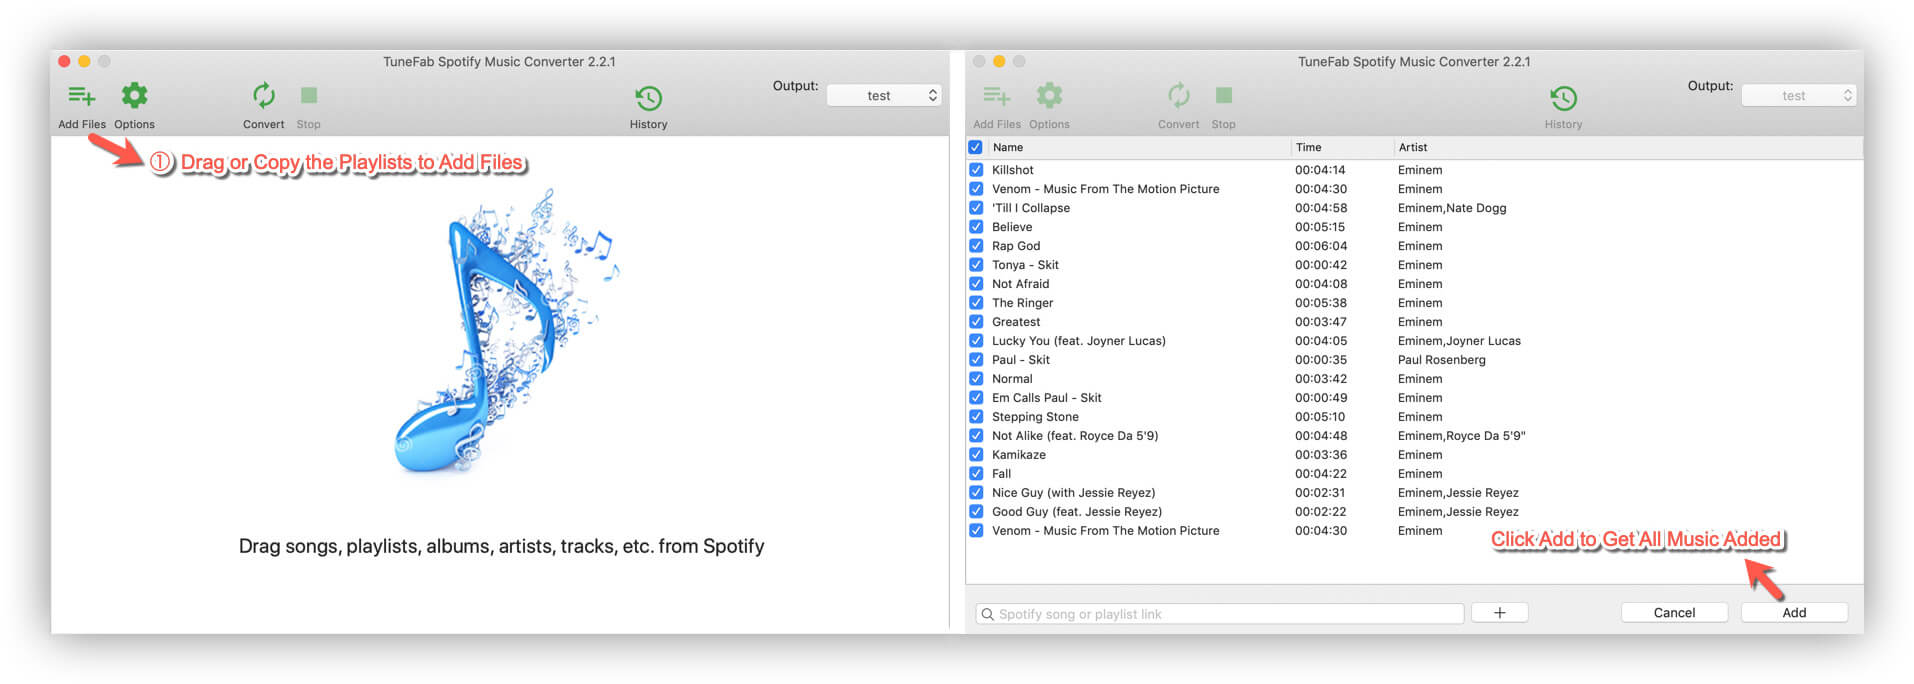 Add Spotify Music to TuneFab Spotify Music Converter